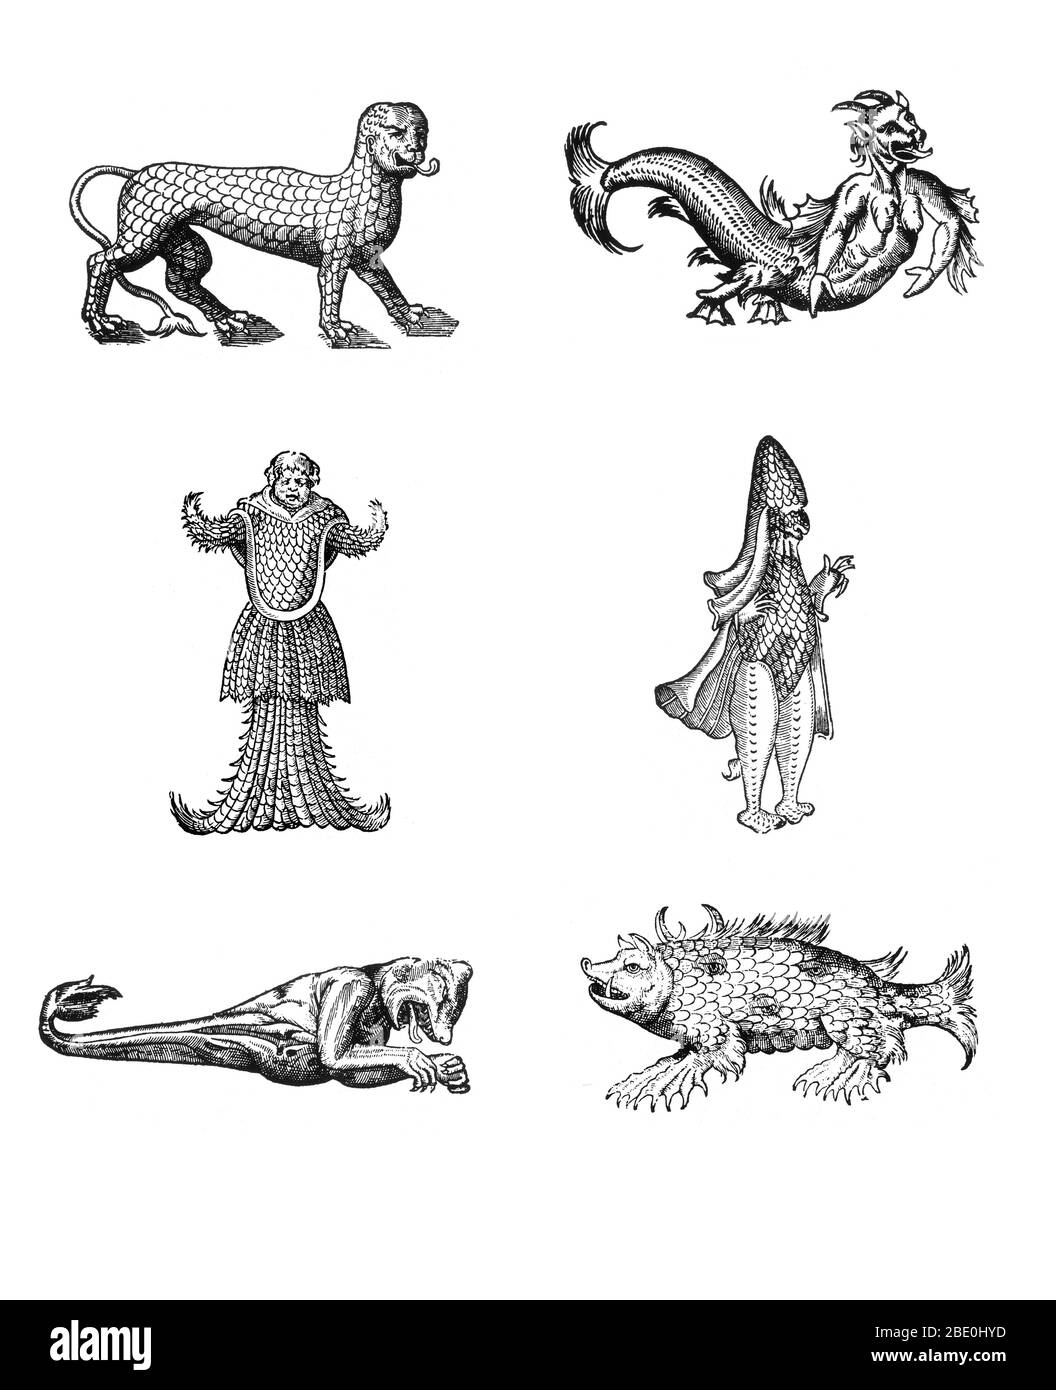 Bosses de monstres marins de des Montres et prodiges par Ambroise Paré, 1573, dans le sens horaire de haut à gauche: 'Lion de marine recouvert de écailles', 'figure cachette d'un diable de mer', 'monstre de marine ressemblant à un évêque vêtu de ses vêtements pontificaux', 'marine sow', 'Monstre marin ayant la tête d'un ours et les bras d'un singe', 'monstre marin ayant la tête d'un moine, armé et recouvert d'écailles de poisson'. Les Montres sont remplis de récits non corroborés de diables marins, de truies marines et d'animaux monstrueux à visage humain. Avec sa discussion approfondie de la reproduction et des illustrations de naissance Banque D'Images